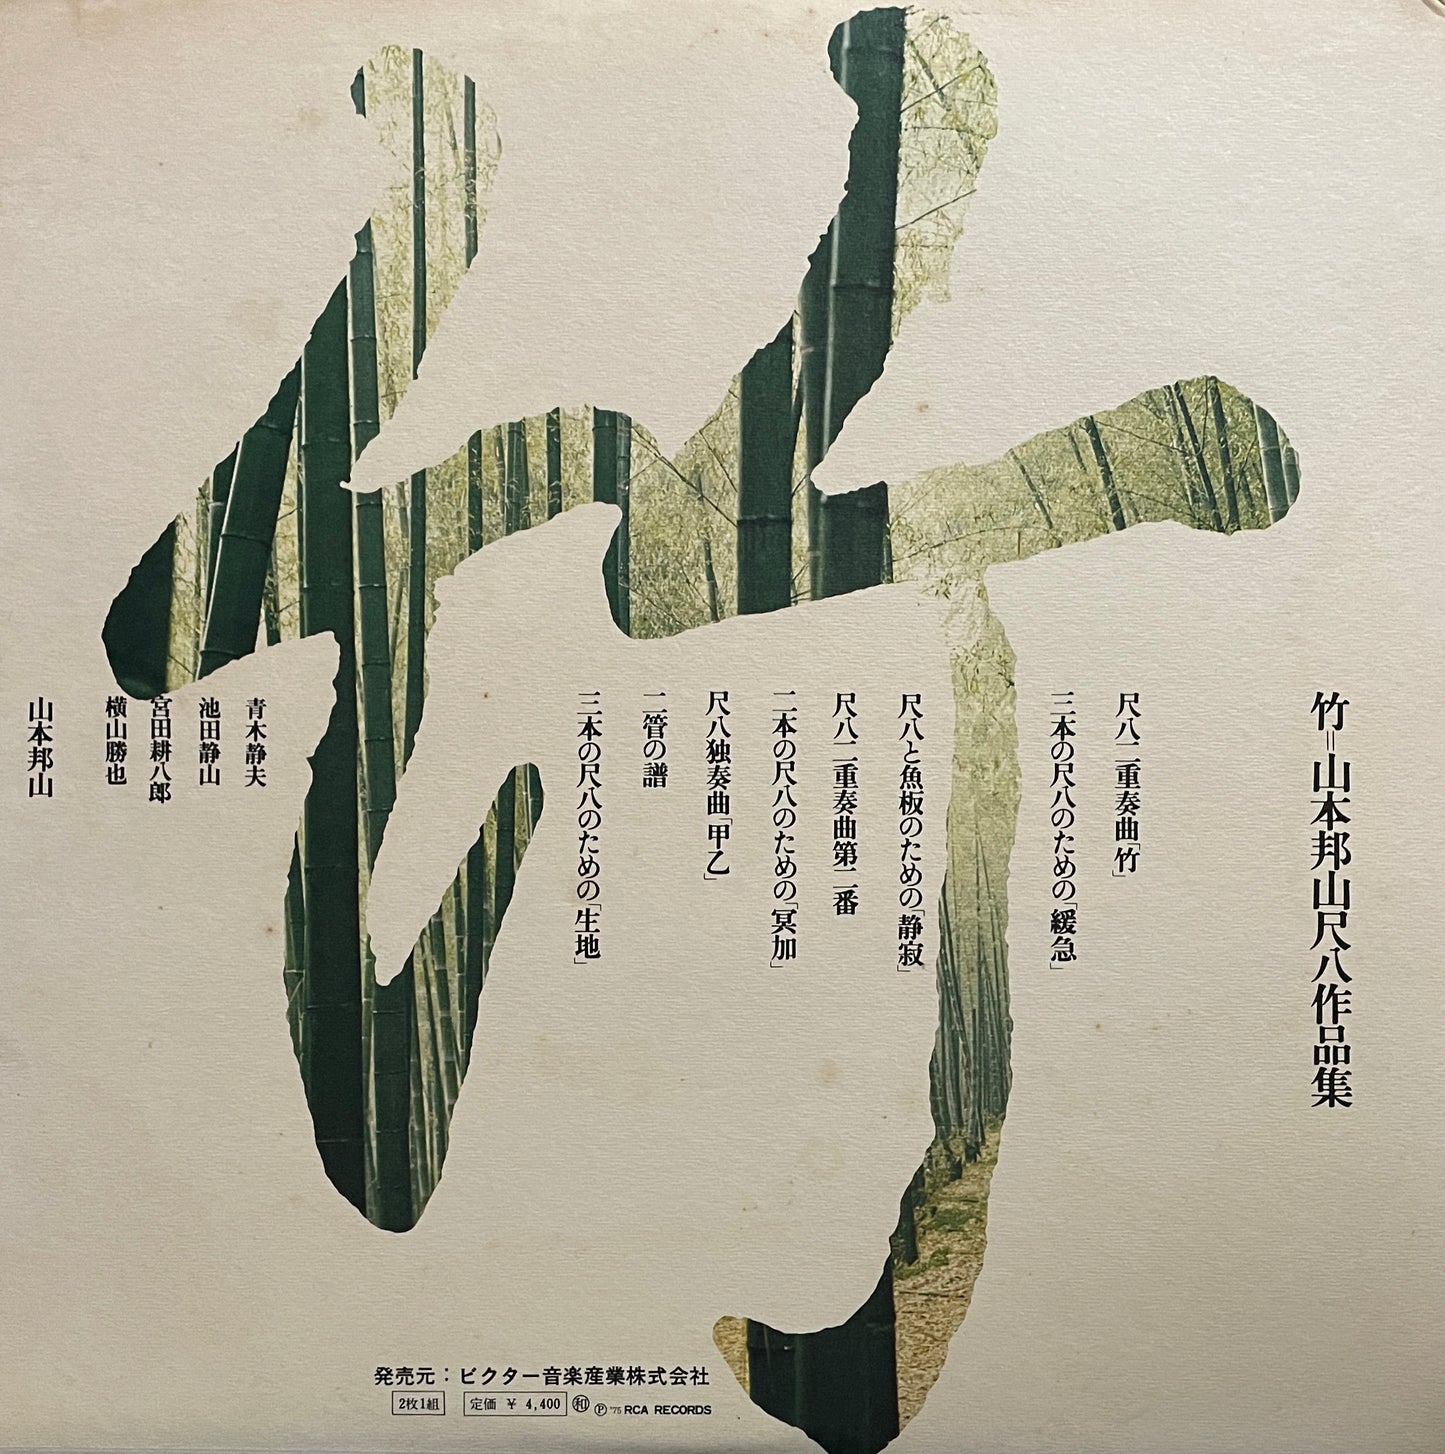 Hozan Yamamoto "竹" (1975)